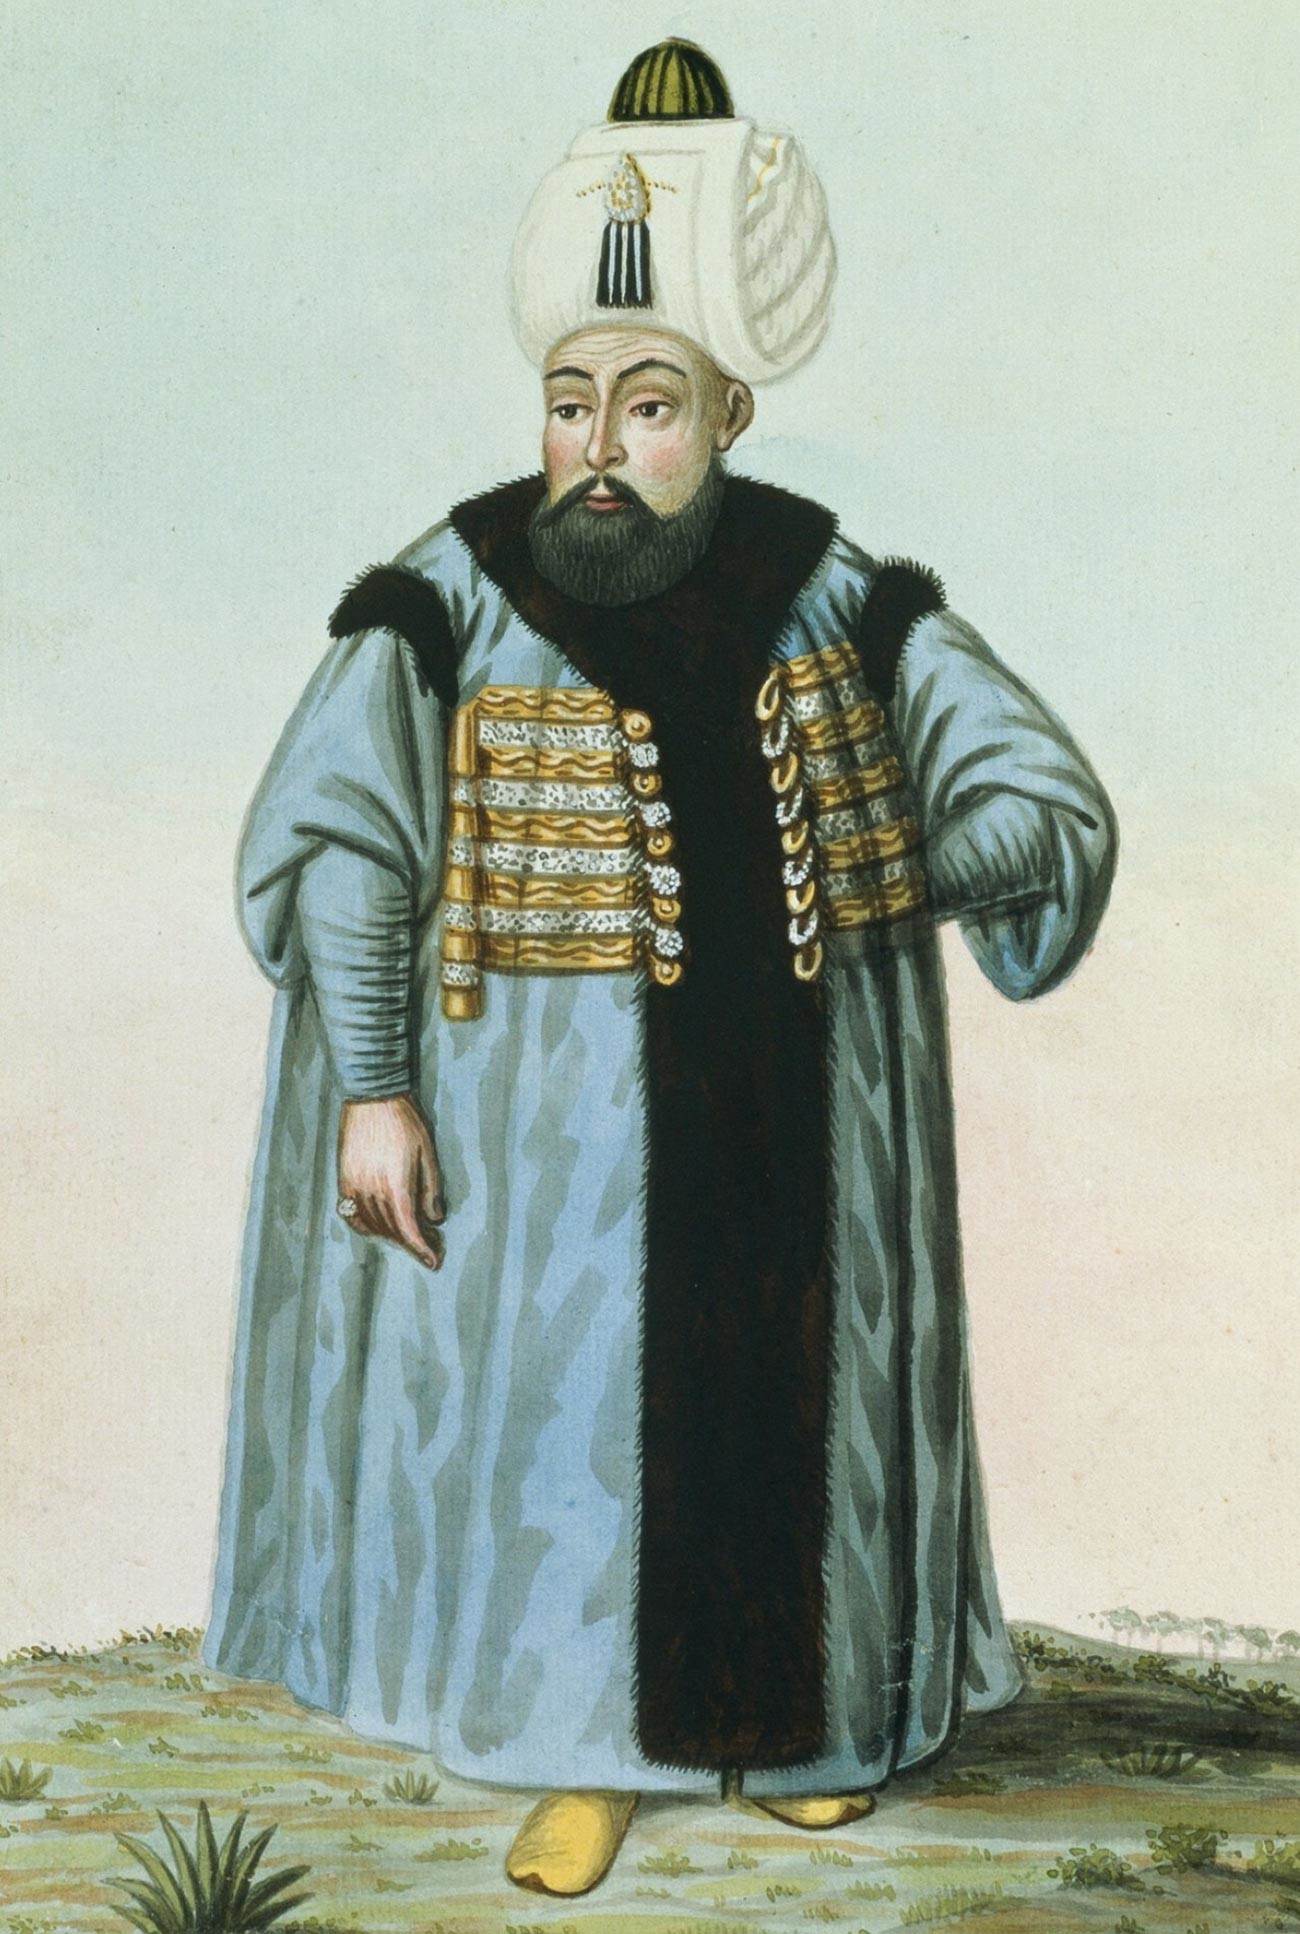 Retrato de Selim II, sultão do Império Otomano (1566-1574).